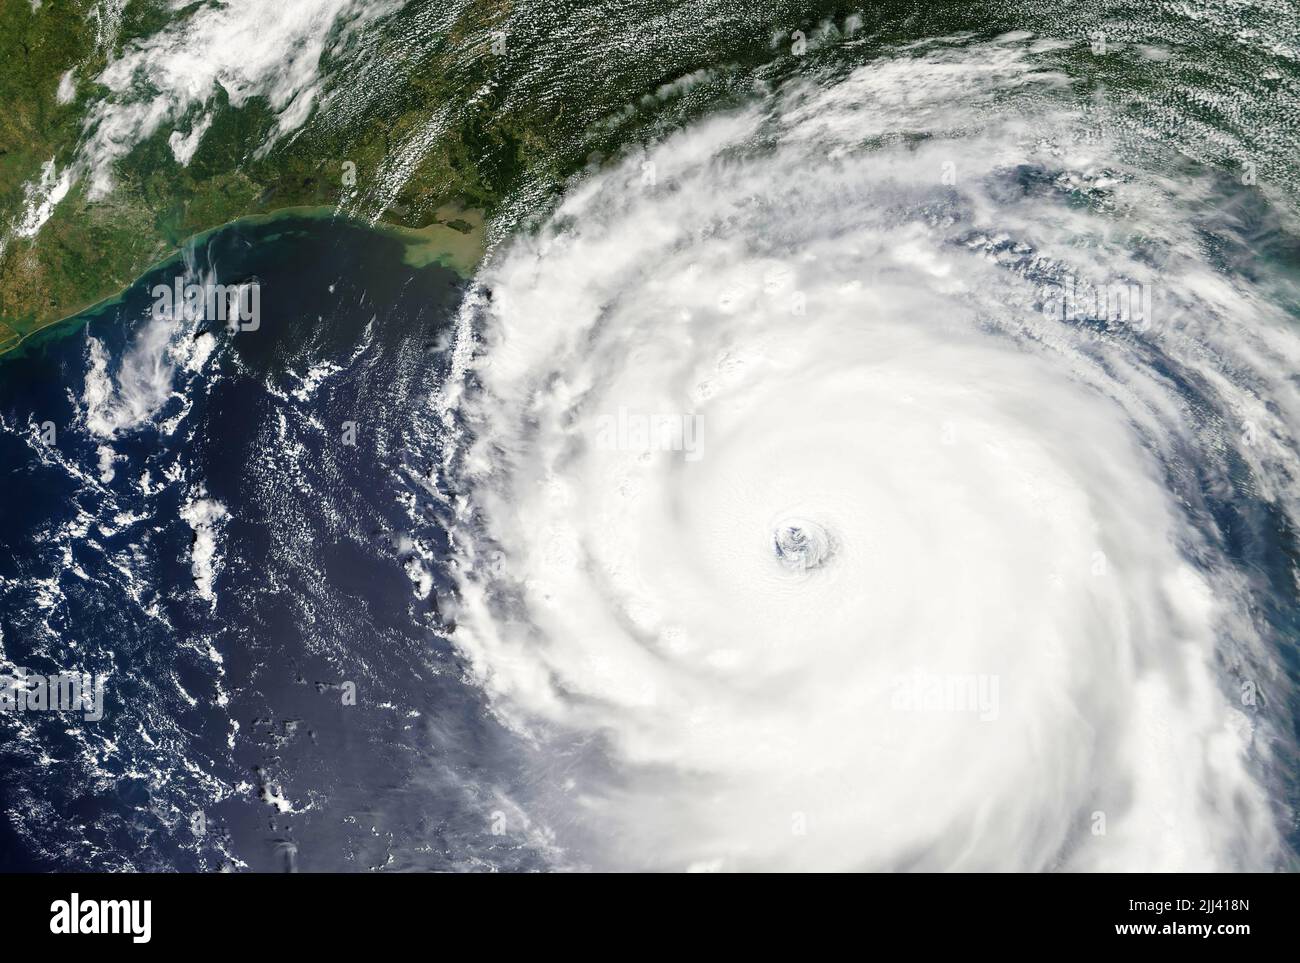 Hochauflösendes Wettersatellitenbild des Hurrikans Katrina, einem verheerenden Sturm der Kategorie 5, im Golf von Mexiko am 28. August 2005, kurz bevor er am frühen Morgen des 29. August in der Gegend von New Orleans, Louisiana, landeinstürze. (USA) Stockfoto